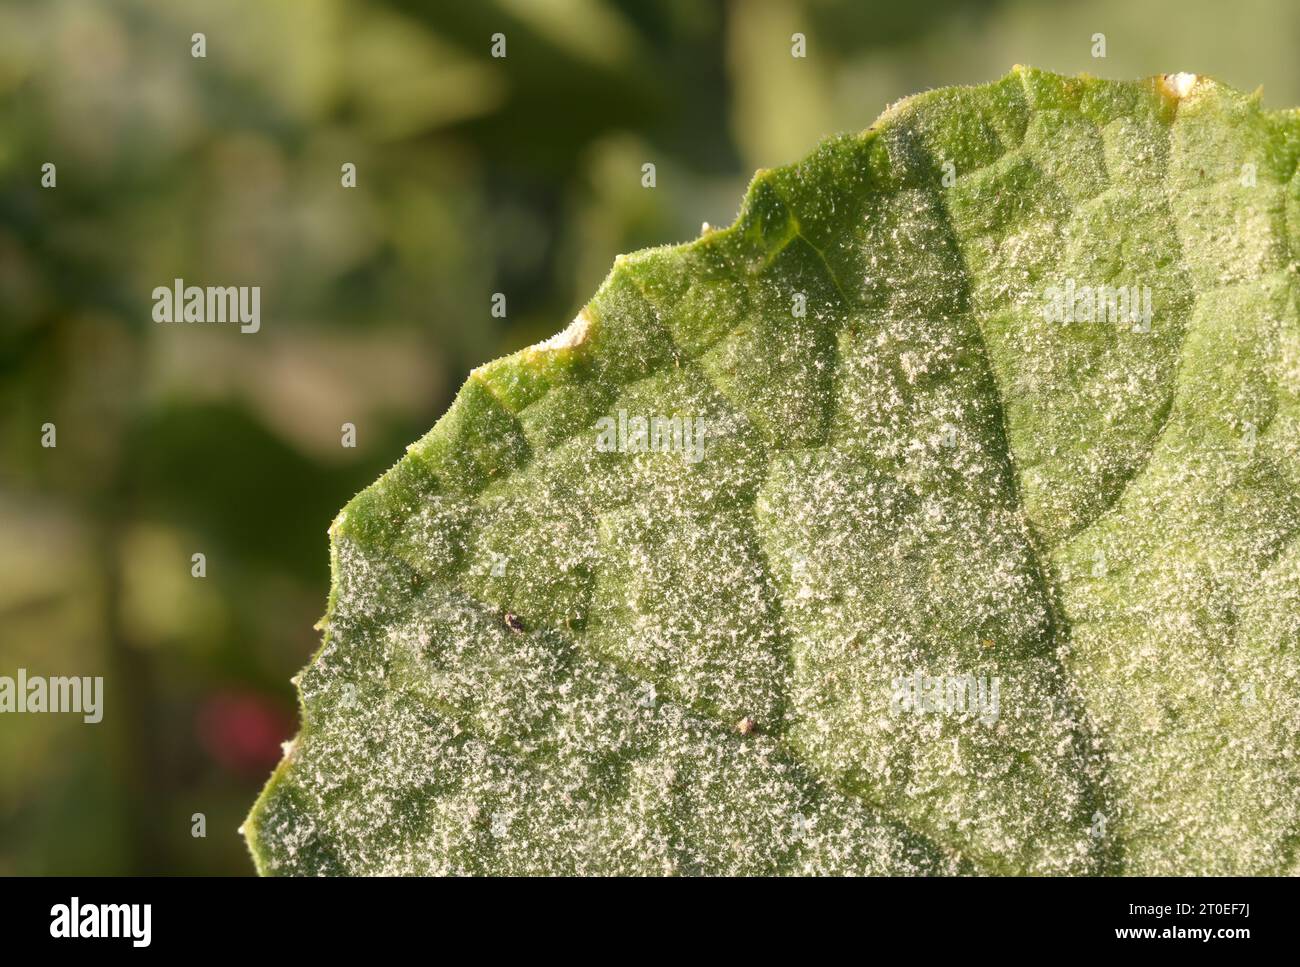 Pudriger Schimmel auf dem Blatt, Nahaufnahme. Weiße Sporen auf dem oberen Blatt der Aubergine im Garten. Pilzkrankheit kontaminiert Gemüse, Kürbiskerle, Nachtschatten und Stockfoto